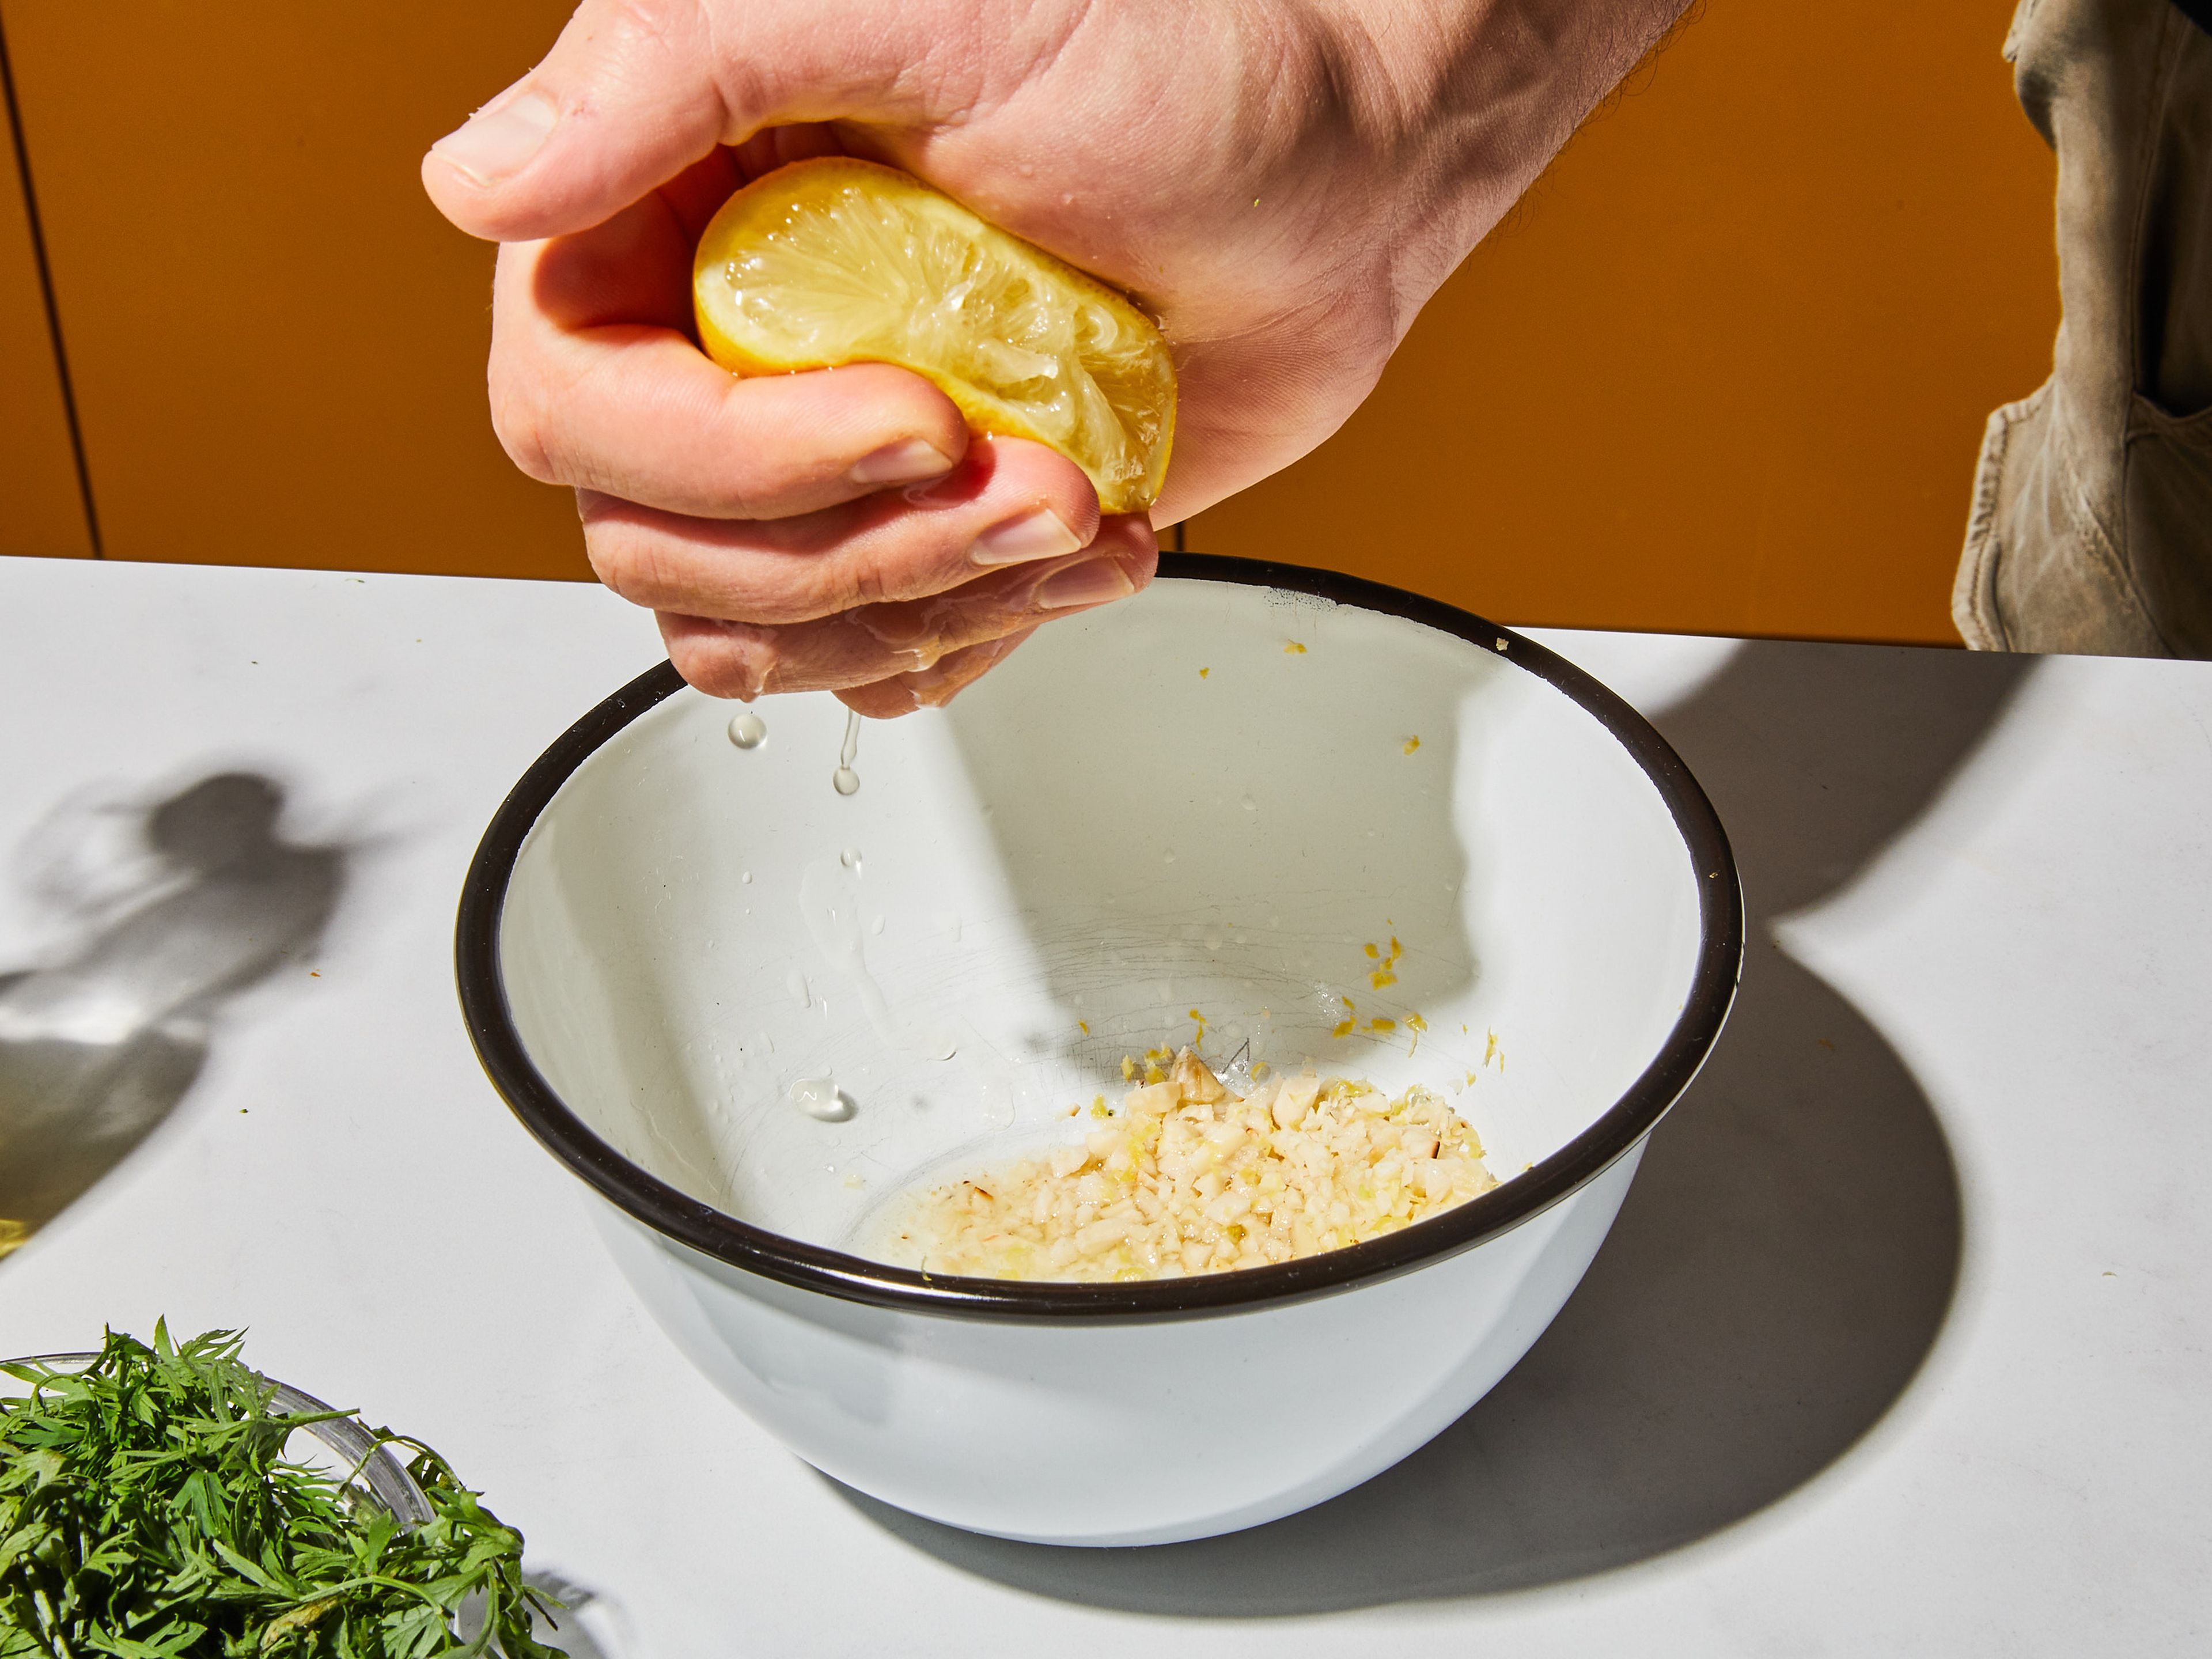 Die gerösteten Mandeln grob hacken und in eine kleine Schüssel geben. Das Karottengrün mit den Händen fest zusammendrücken und rollen, damit es sich leichter hacken lässt. Dann fein hacken und in die Schüssel mit den Mandeln geben. Die Zitrone abreiben, den Saft auspressen und ebenfalls in die Schüssel geben. Knoblauch in die Schüssel reiben, etwas Olivenöl dazugeben, mit Pfeffer und etwas Salz abschmecken und gut vermischen. Zum Servieren Quinoa auf Tellern oder Schüsseln verteilen. Mit dem gerösteten Gemüse und der Karotten-Gremolata anrichten. Guten Appetit!